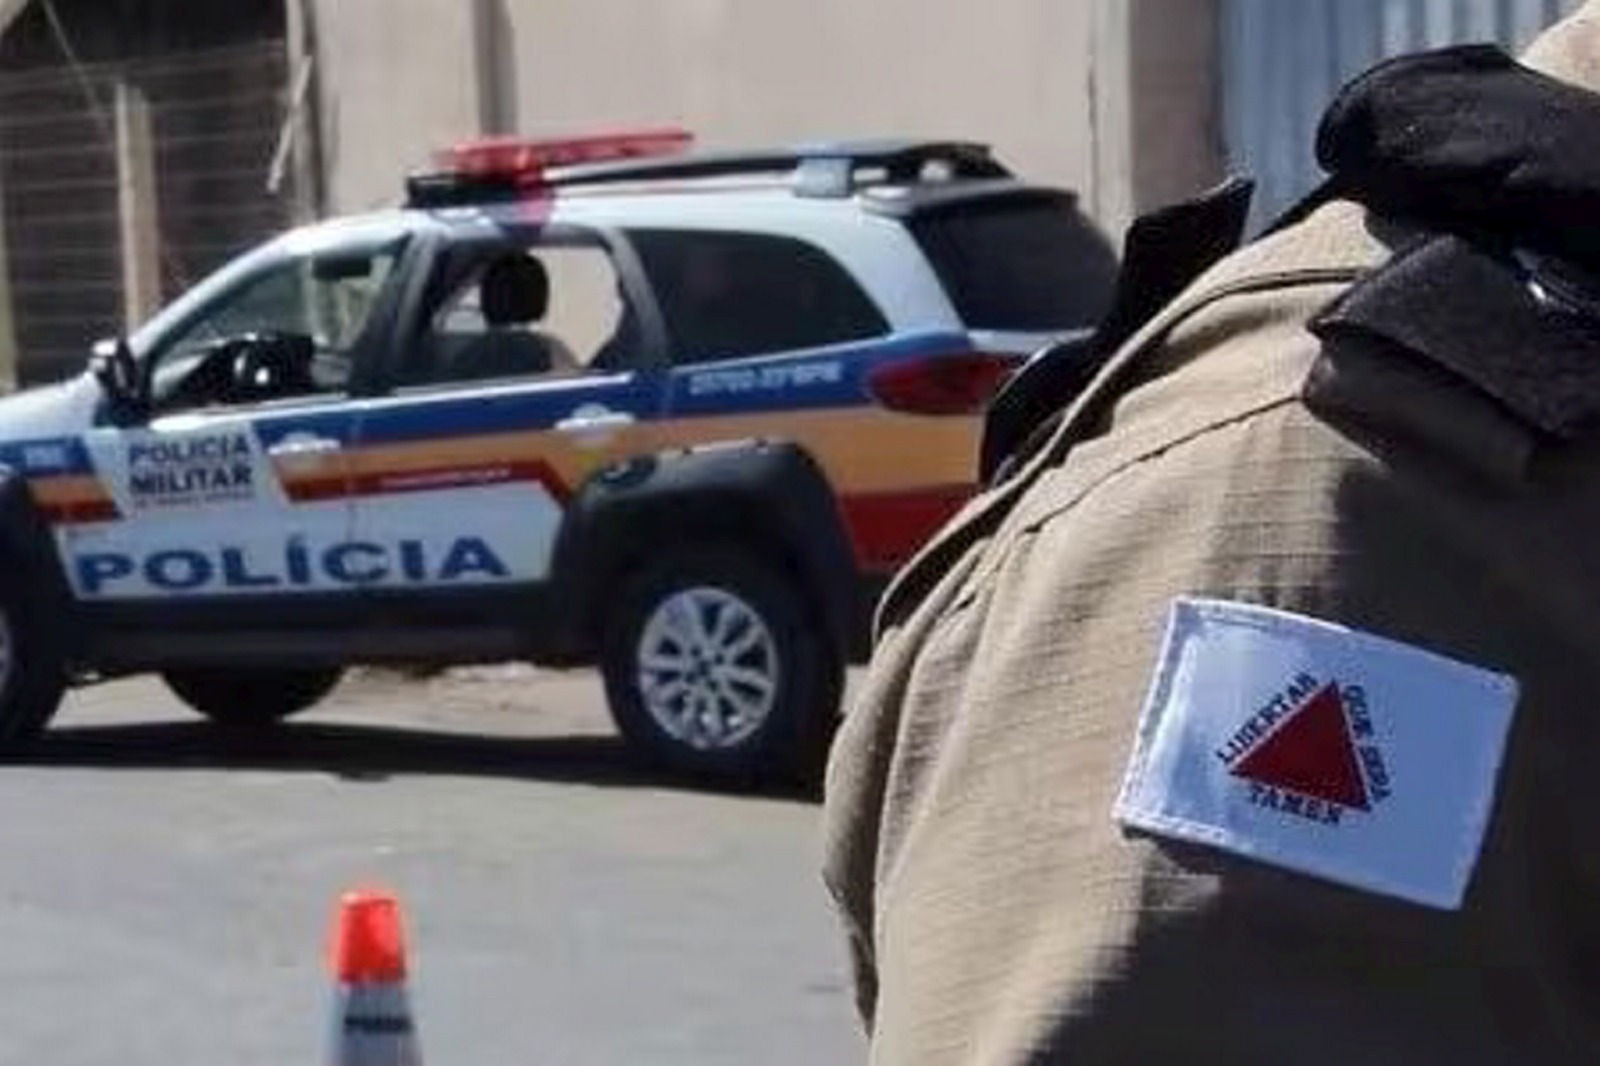 Nesta semana, dois policiais militares tiraram a própria vida em batalhões de Minas